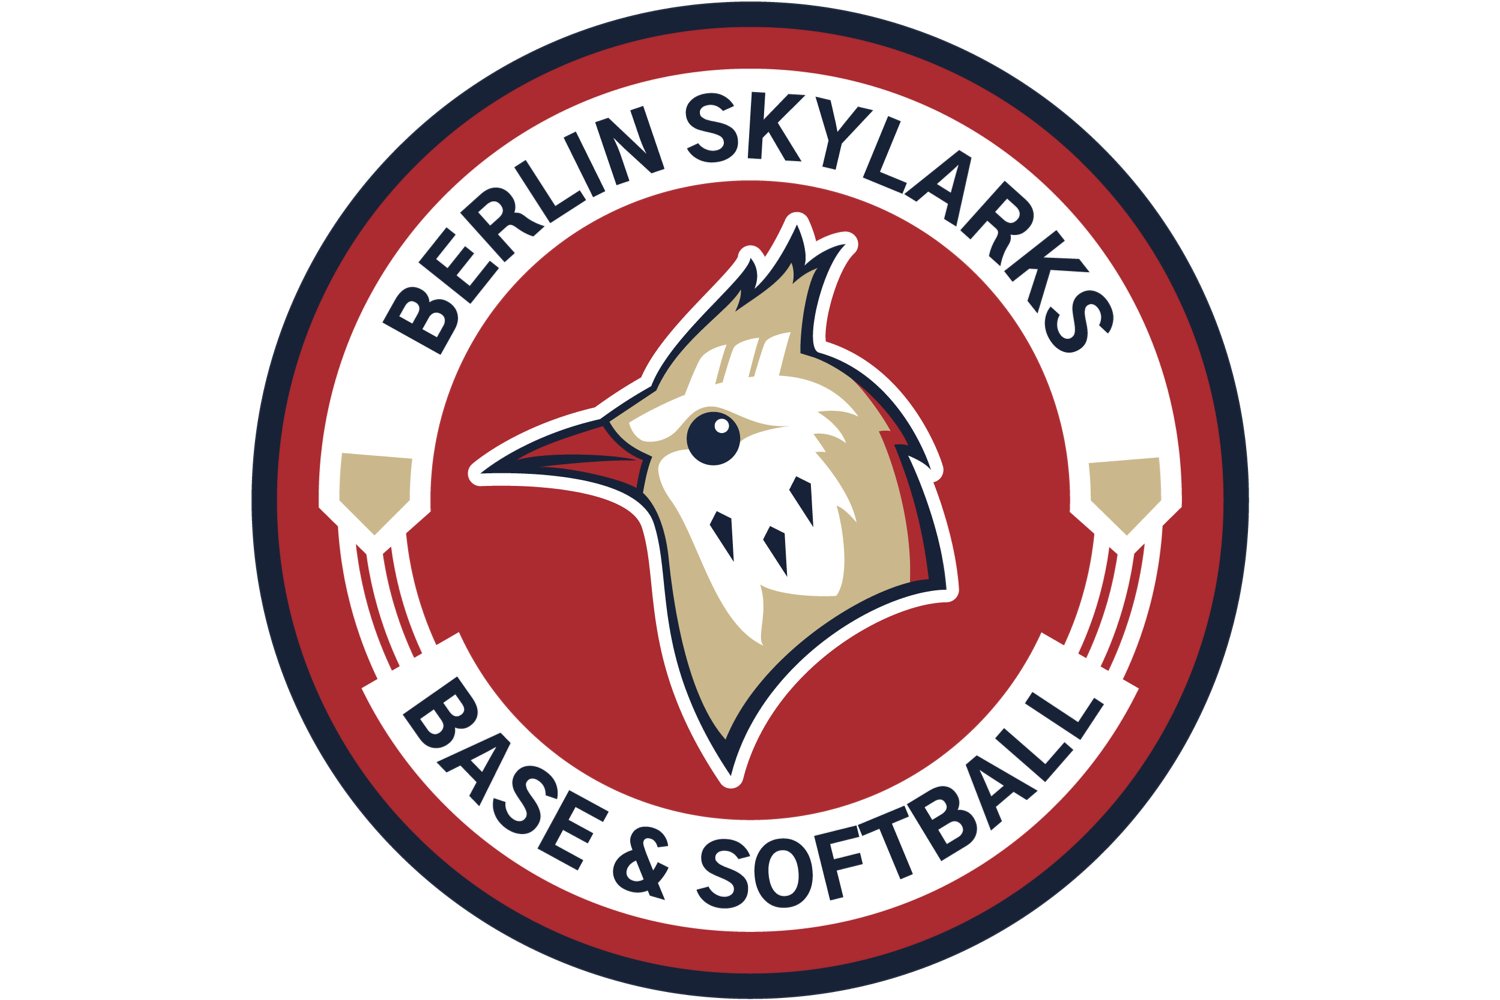 Berlin Skylarks Logo Roundell